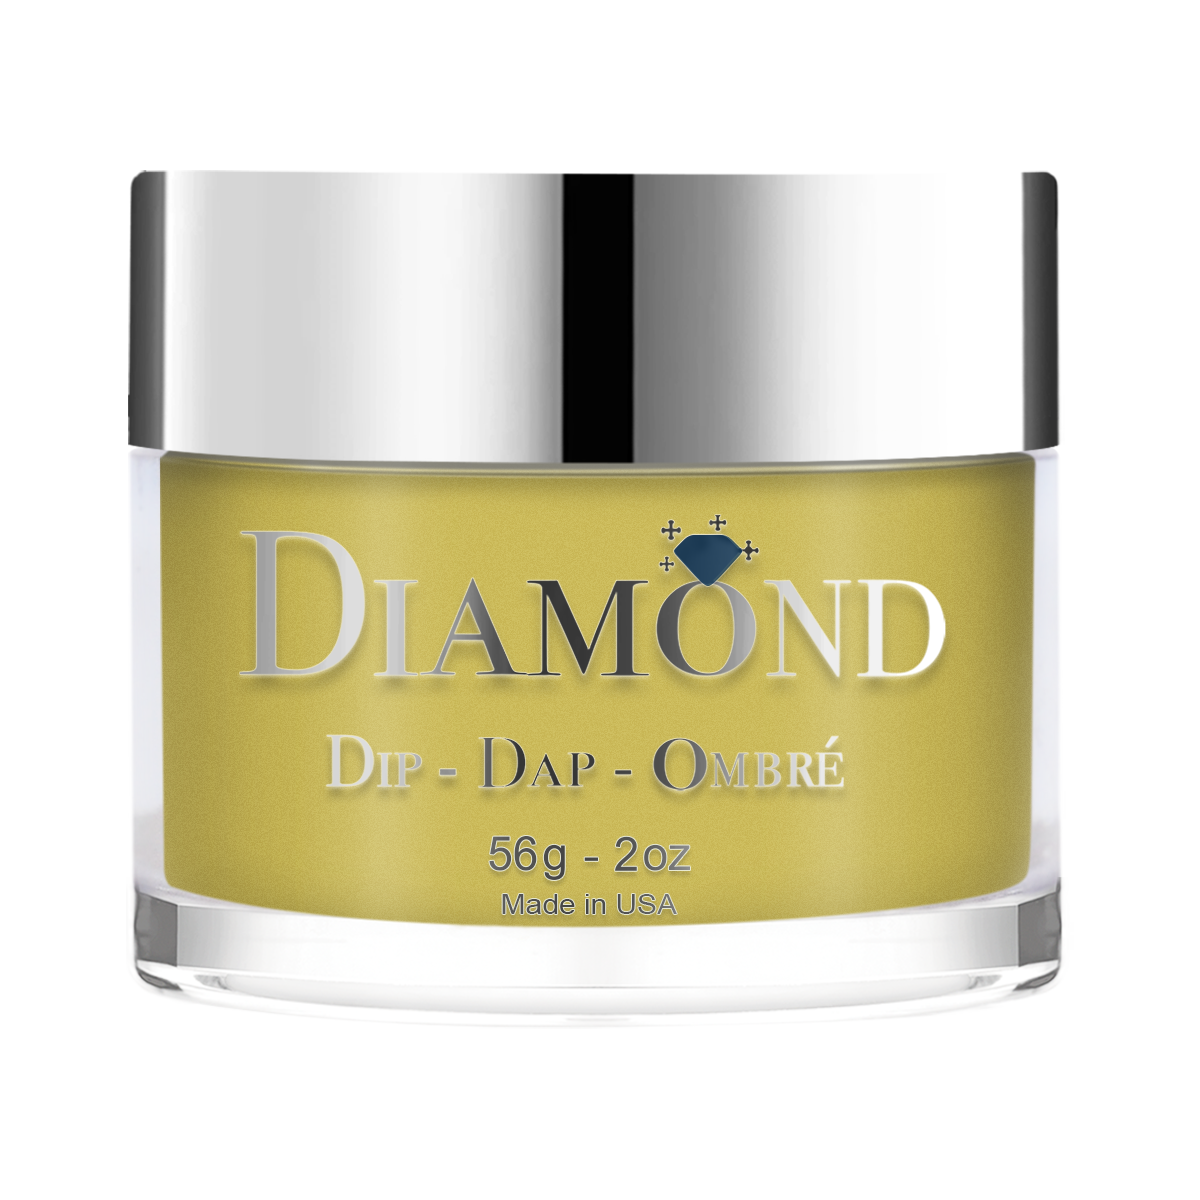 Diamond Dip & Dap Ombre Powder - 122